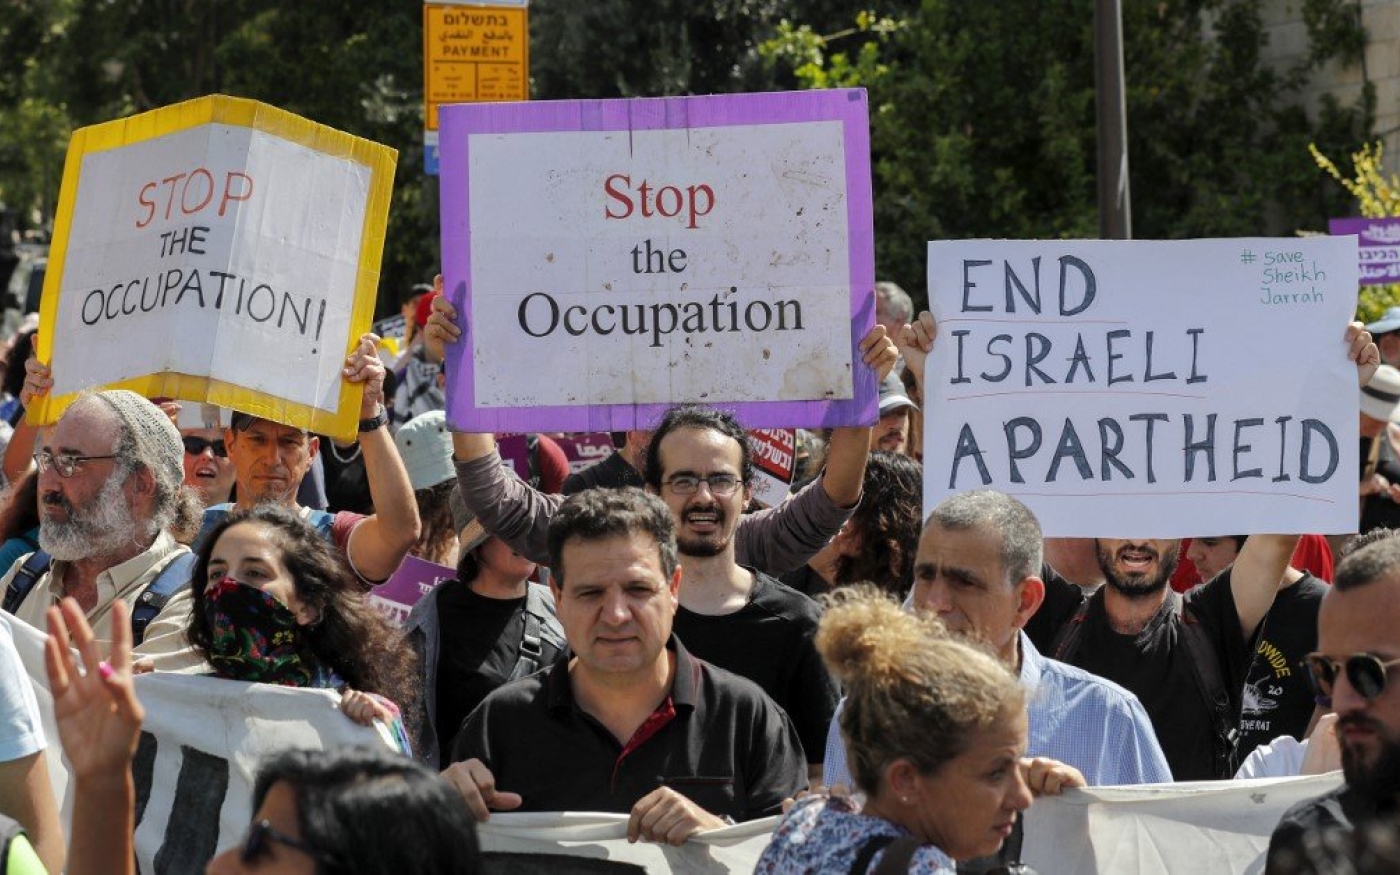 Des activistes manifestent contre l’occupation israélienne près de Sheikh Jarrah, le 11 juin 2021 (AFP)